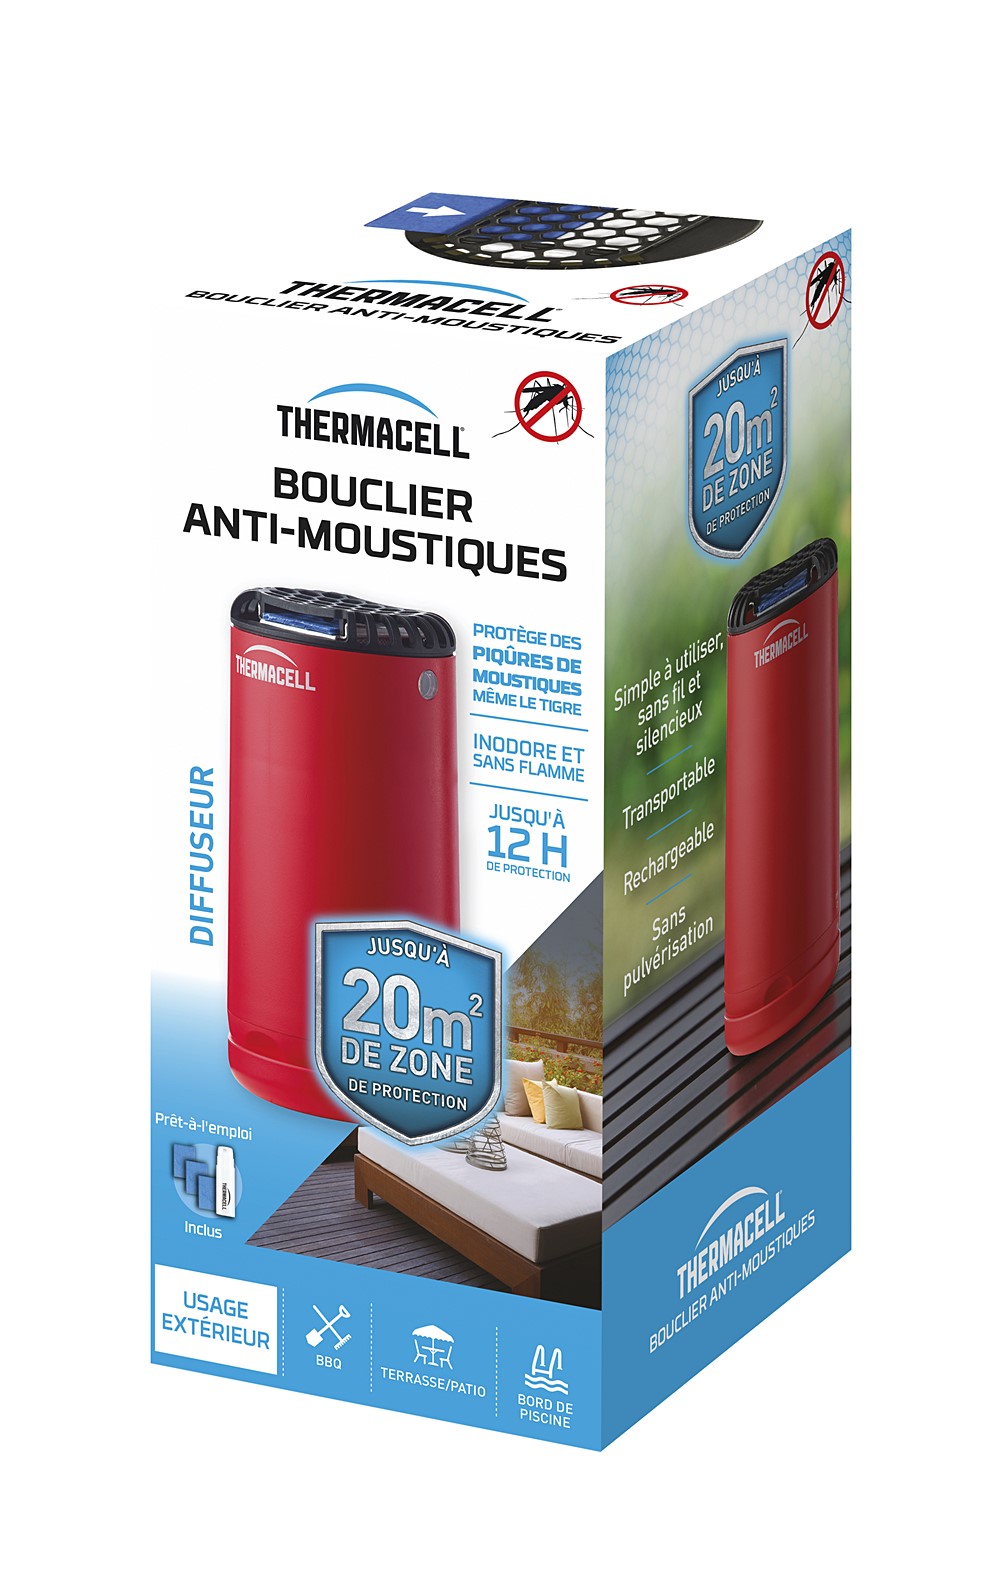 Bouclier anti-moustiques diffuseur rouge + 1 Cartouche de Butane + 3 Plaquettes de 4H - THERMACELL 